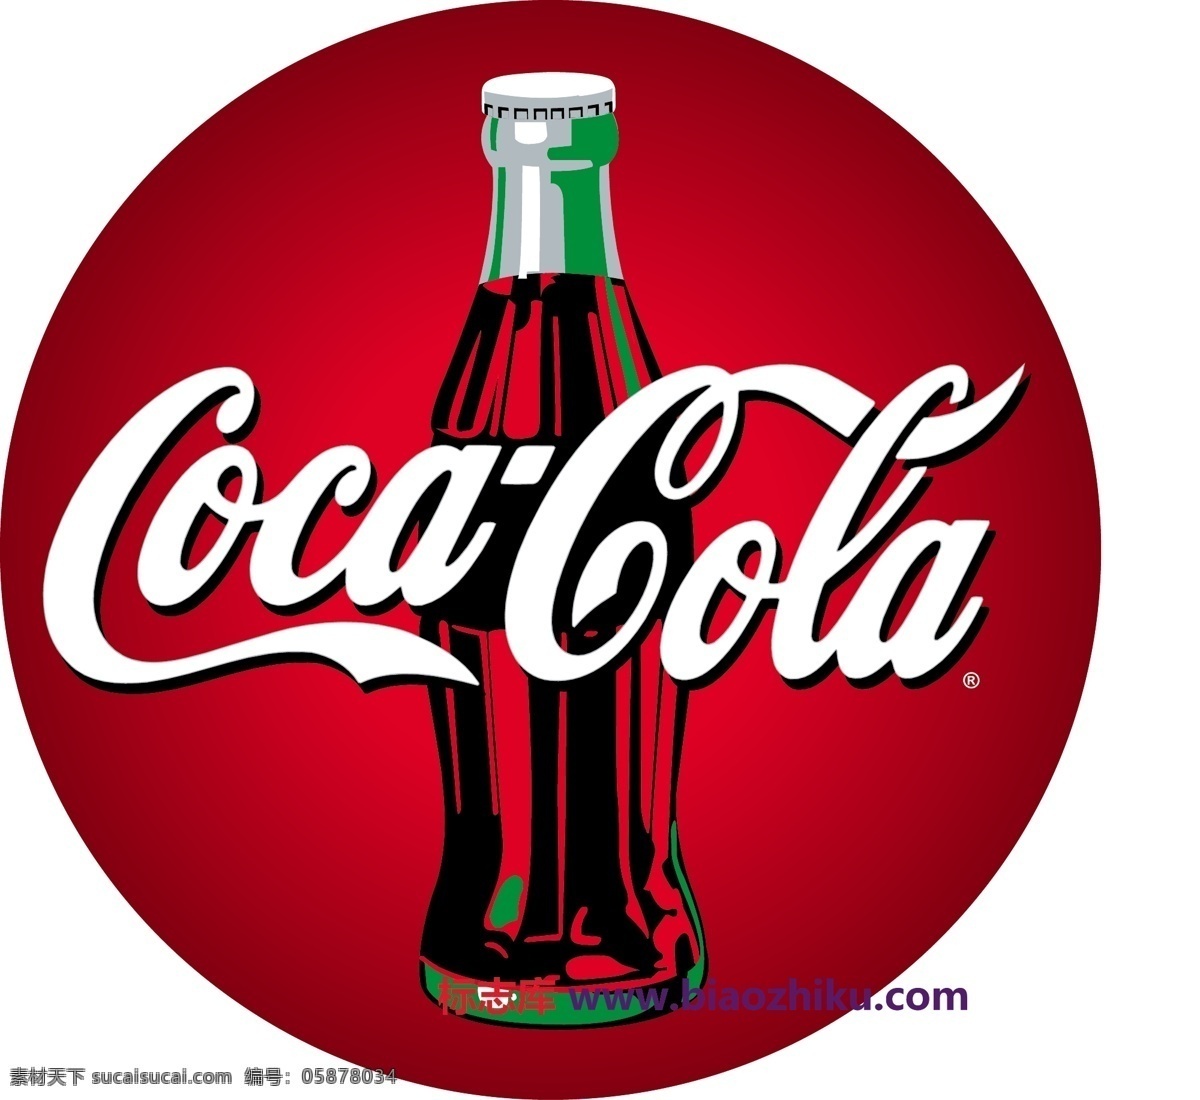 cocacola logo大全 logo 设计欣赏 商业矢量 矢量下载 可口可乐 标志设计 欣赏 网页矢量 矢量图 其他矢量图